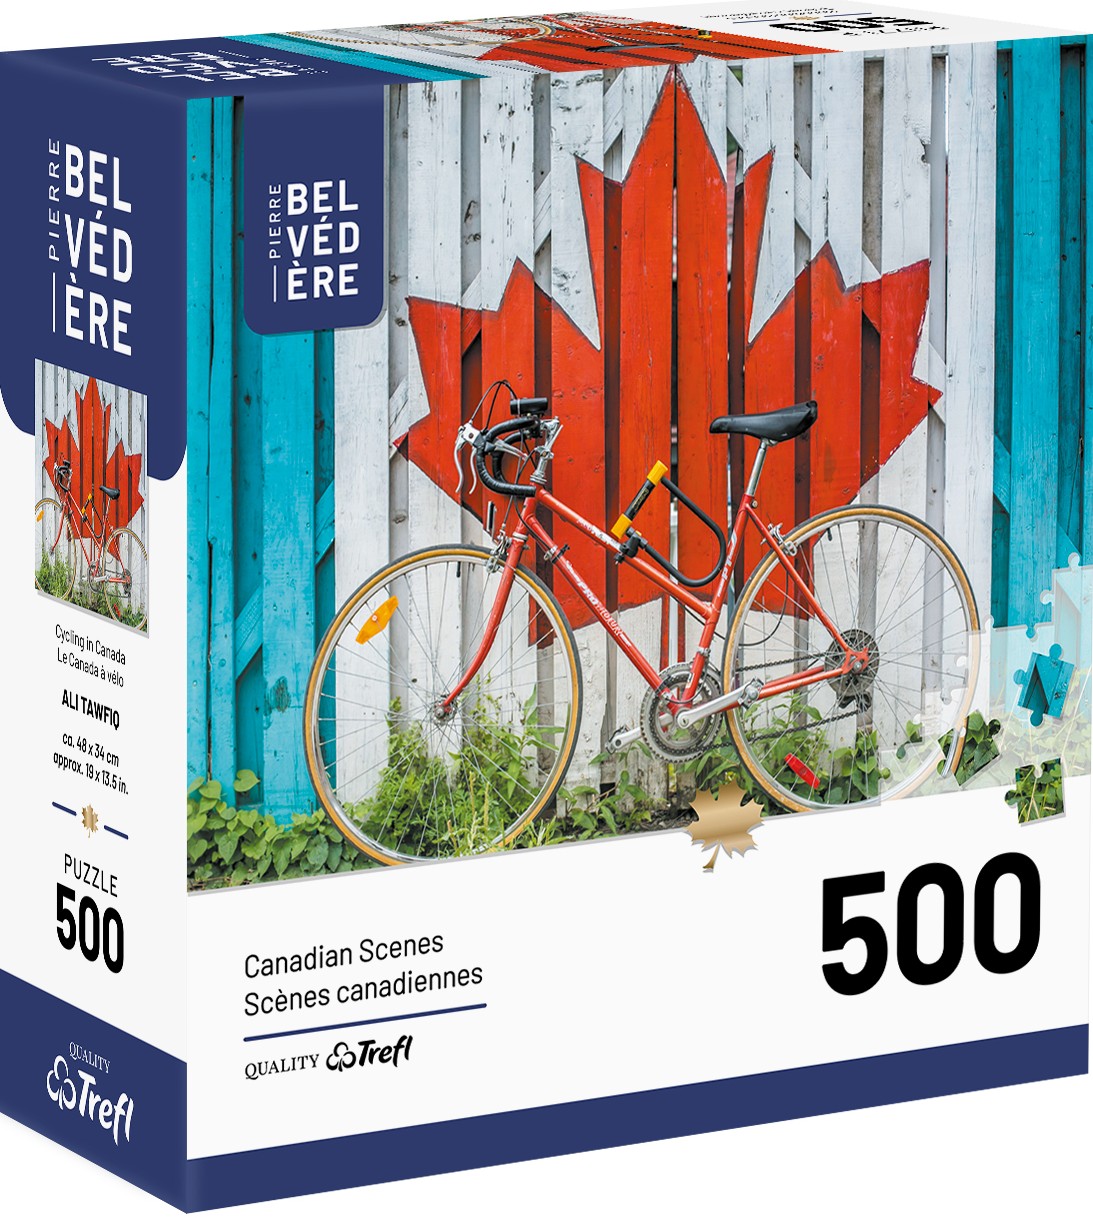 Boîte du casse-tête Le Canada à vélo (500 pièces) - Pierre Belvédère - Trefl